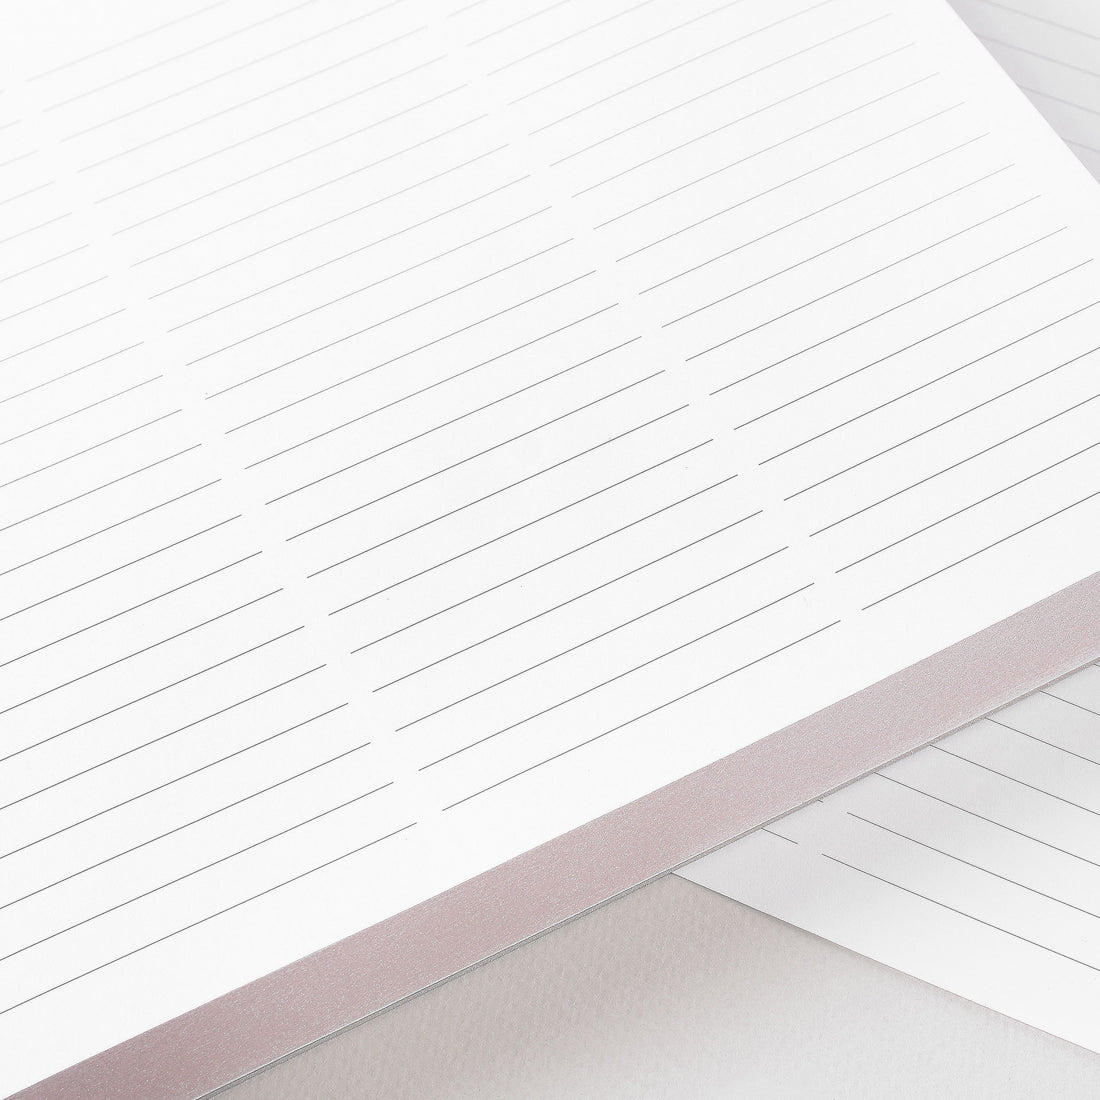 Sapling Press Sir List-A-Lot Large Notepad 